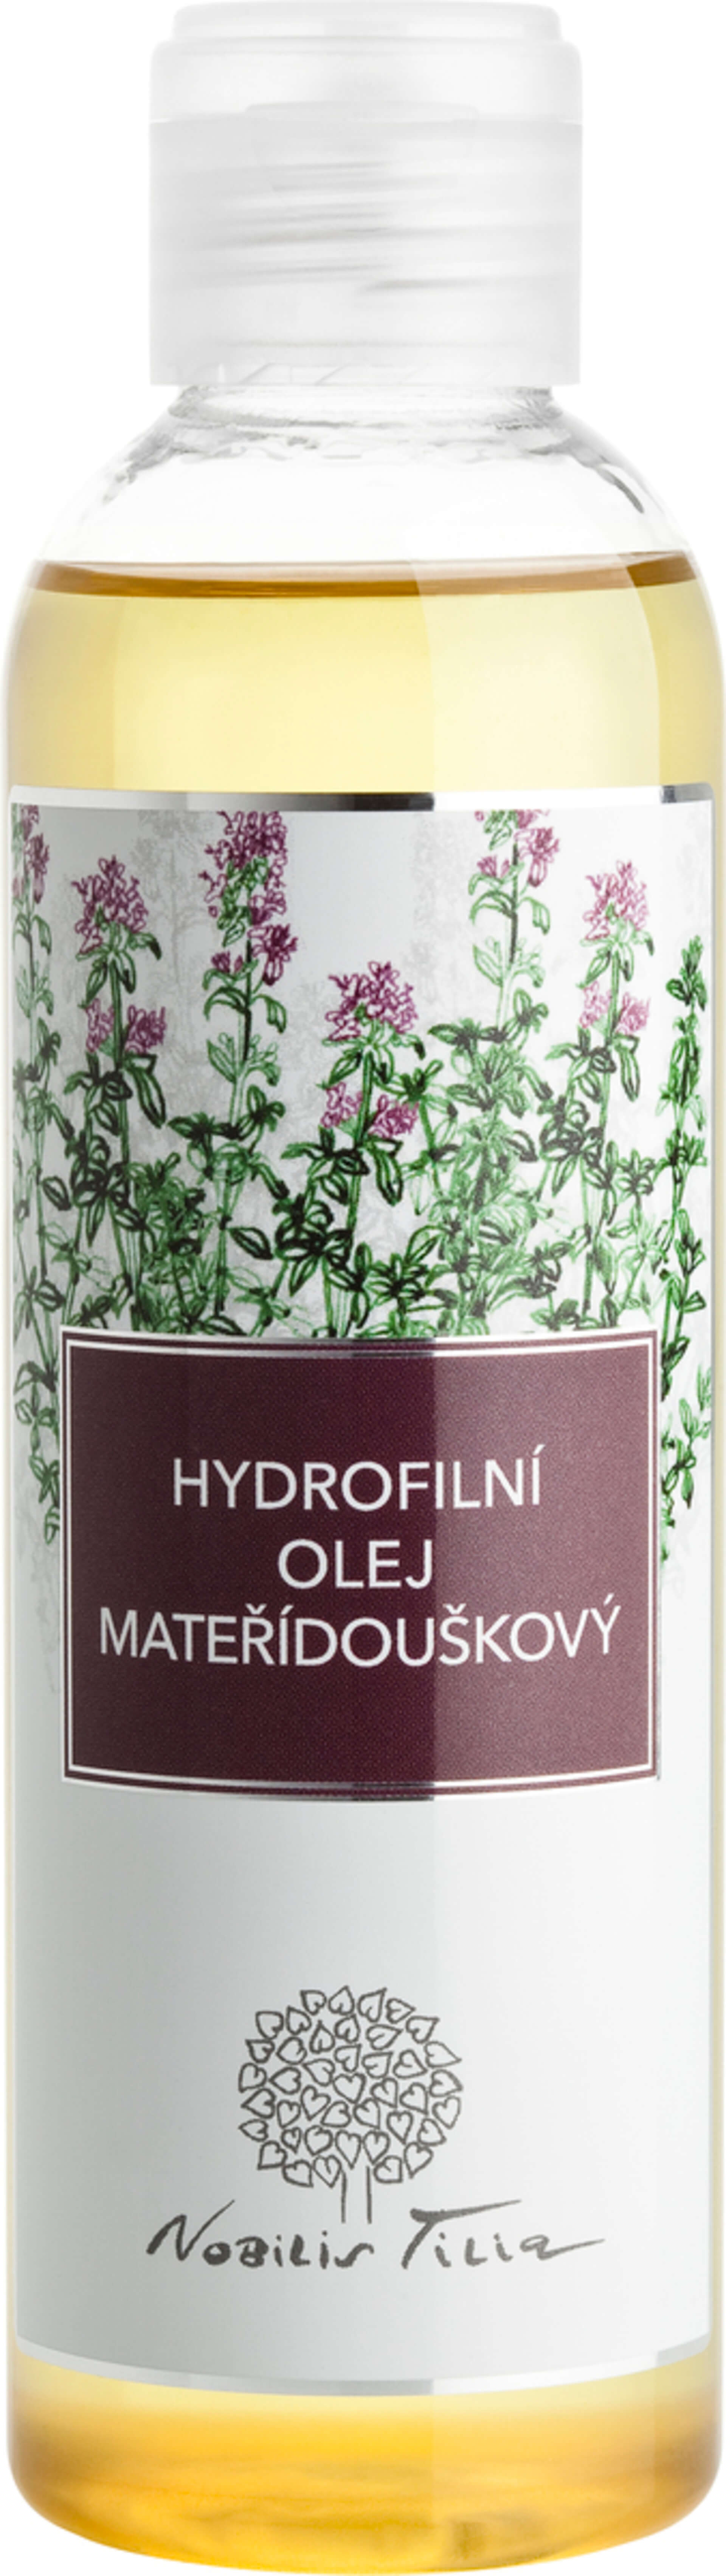 Nobilis Tilia Hydrofilný olej Materinodúškový 200 ml